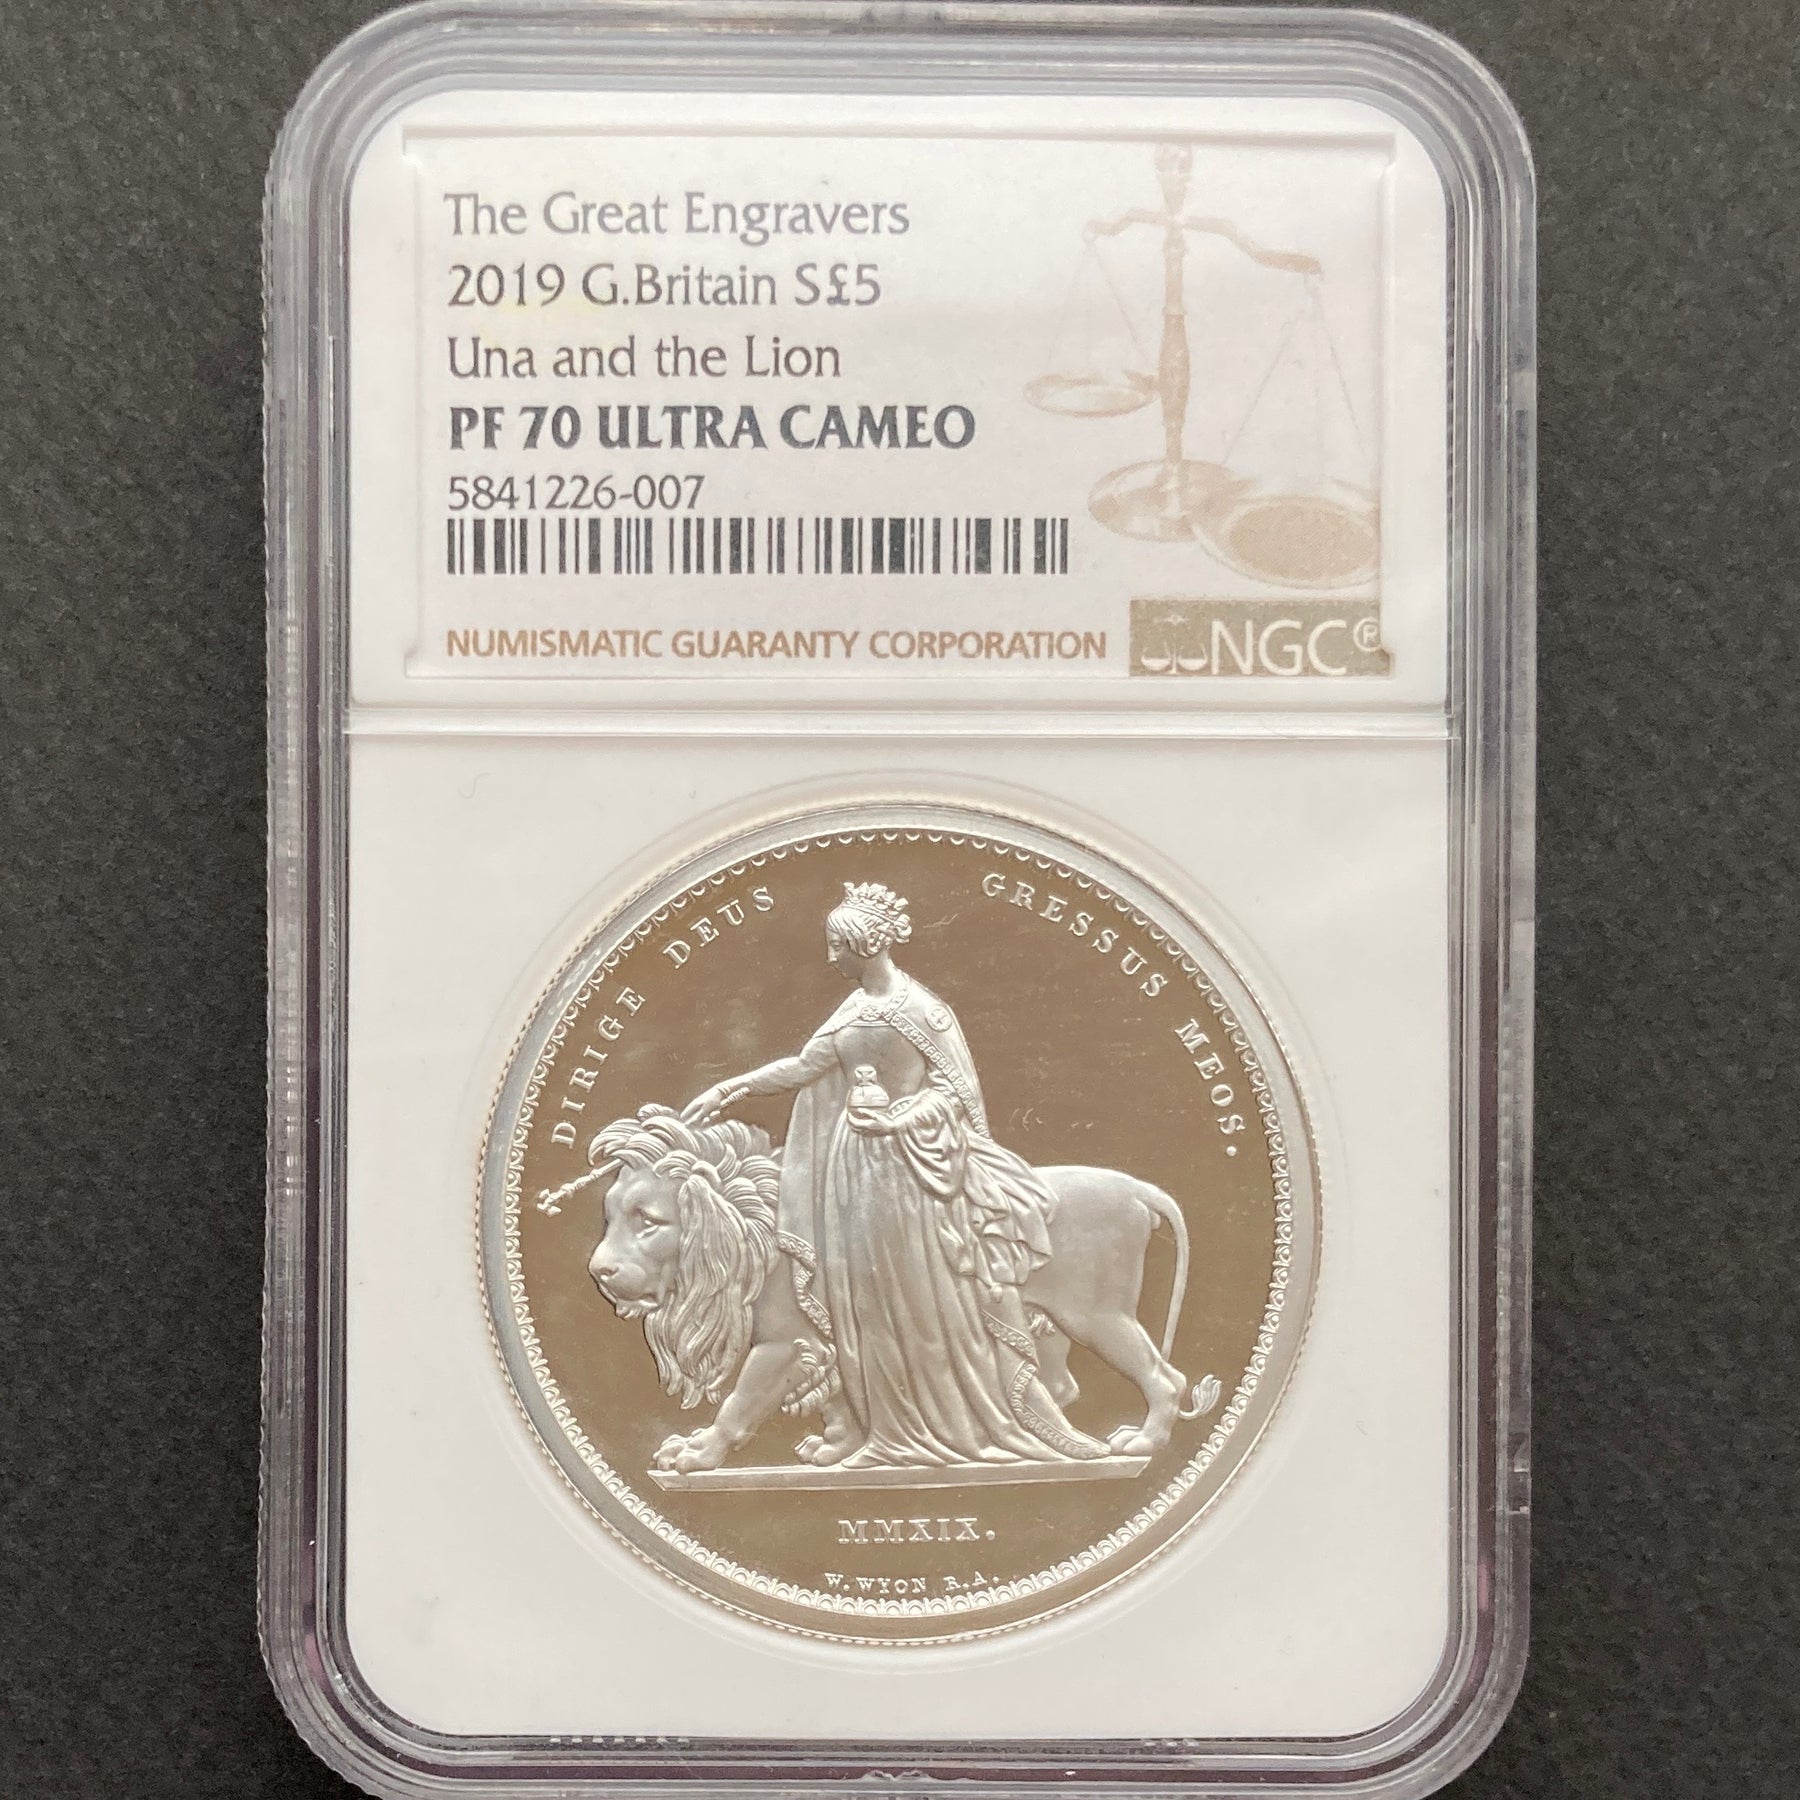 2019年 イギリス 1ドル NGC PF69 ウナとライオン 銀貨 コイン www